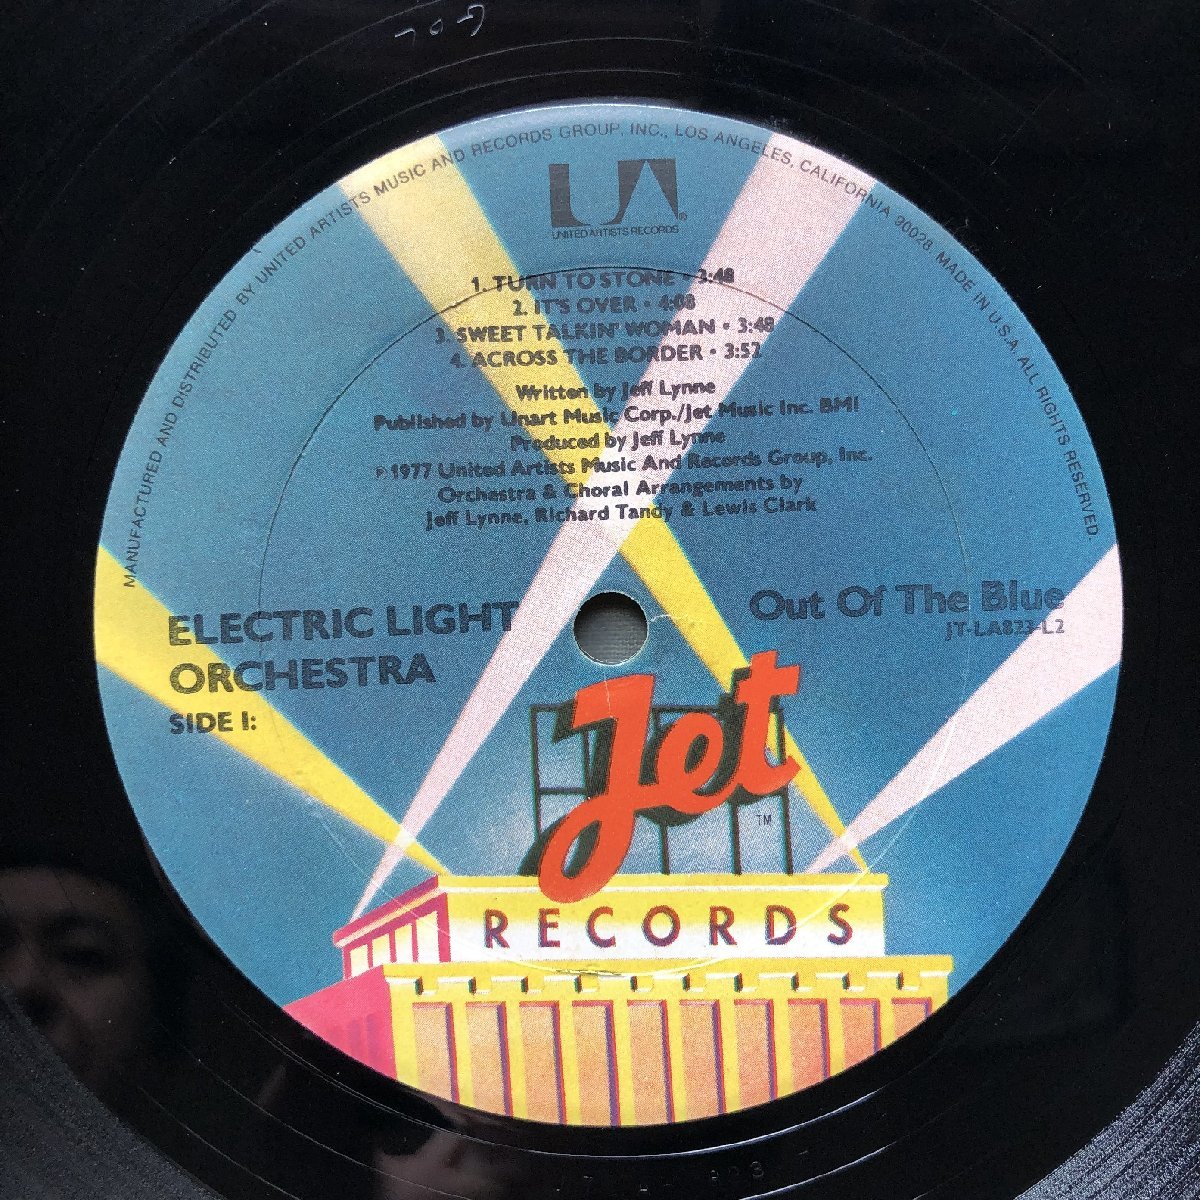 良盤 1977年 米国盤 Electric Light Orchestra (ELO) 2枚組LPレコード Out Of The Blue: Jeff Lynn, Turn To Stone レア グッズ広告付_画像7